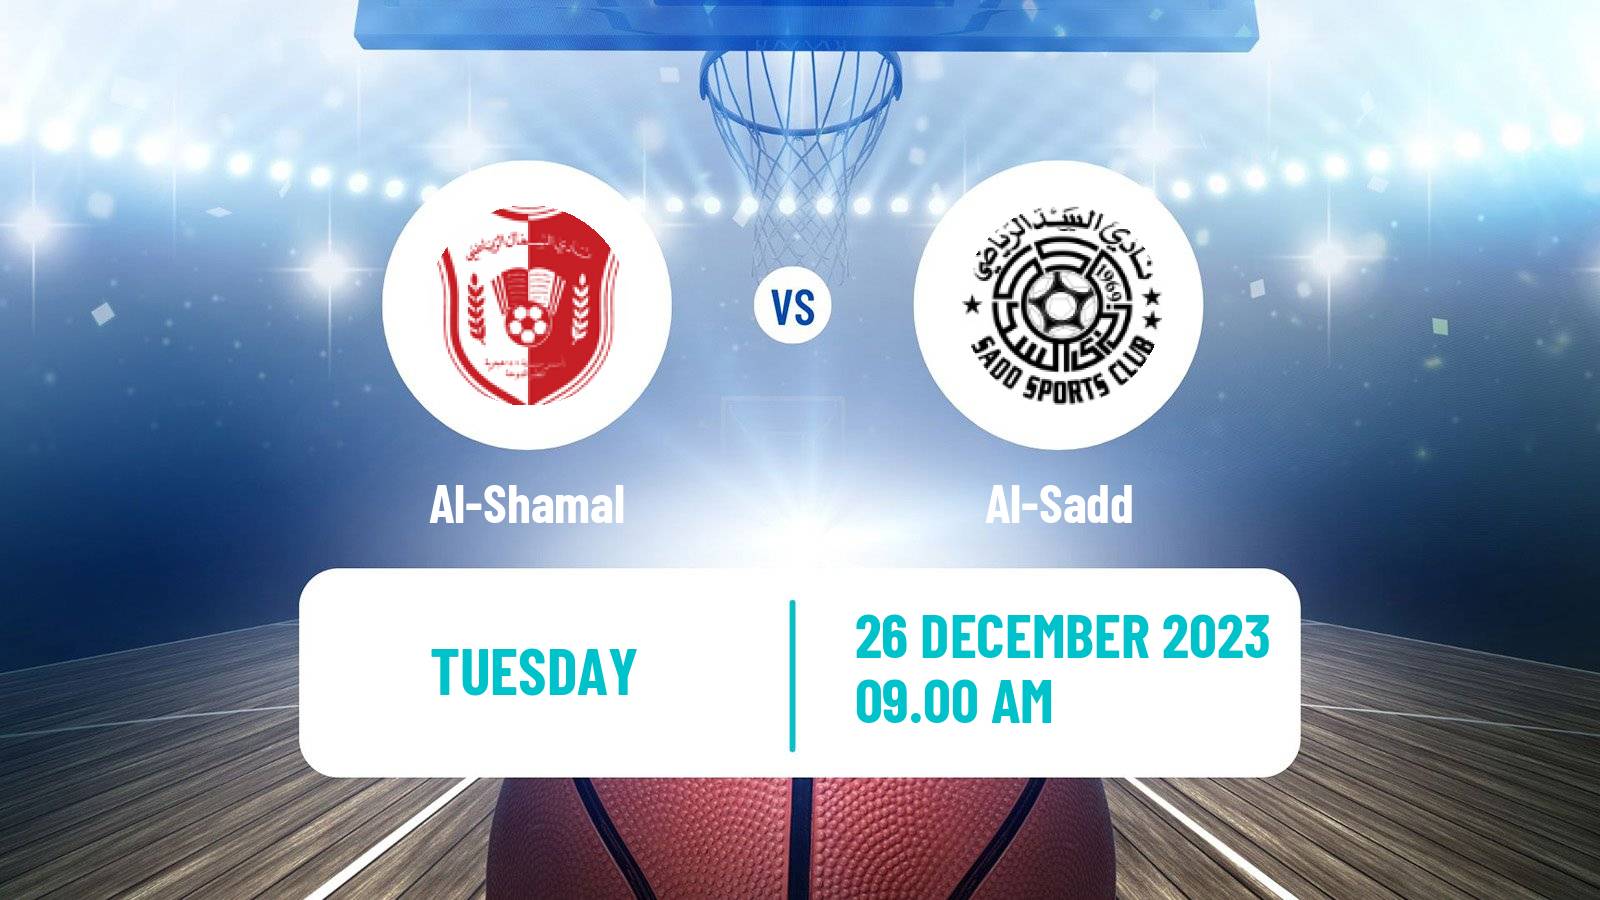 Basketball Qatar Basketball League Al-Shamal - Al-Sadd